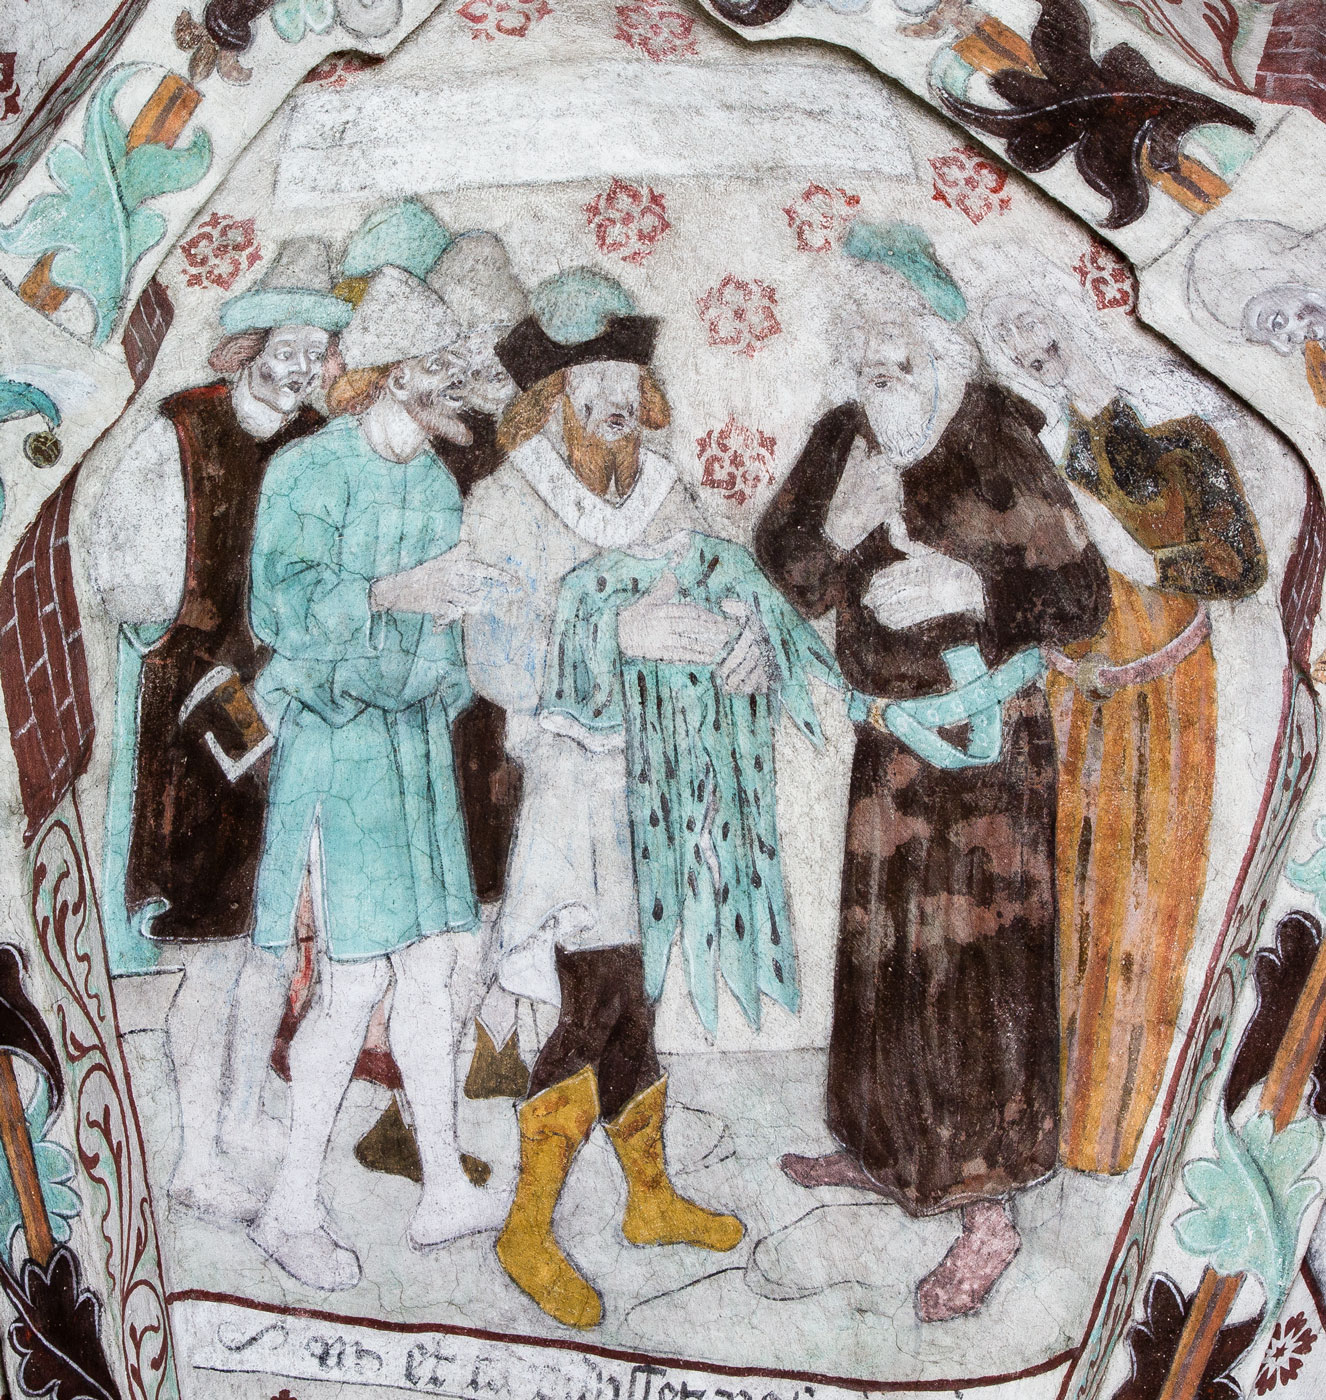 Josefs blodiga klädnad visas för Jakob - Härkeberga kyrka